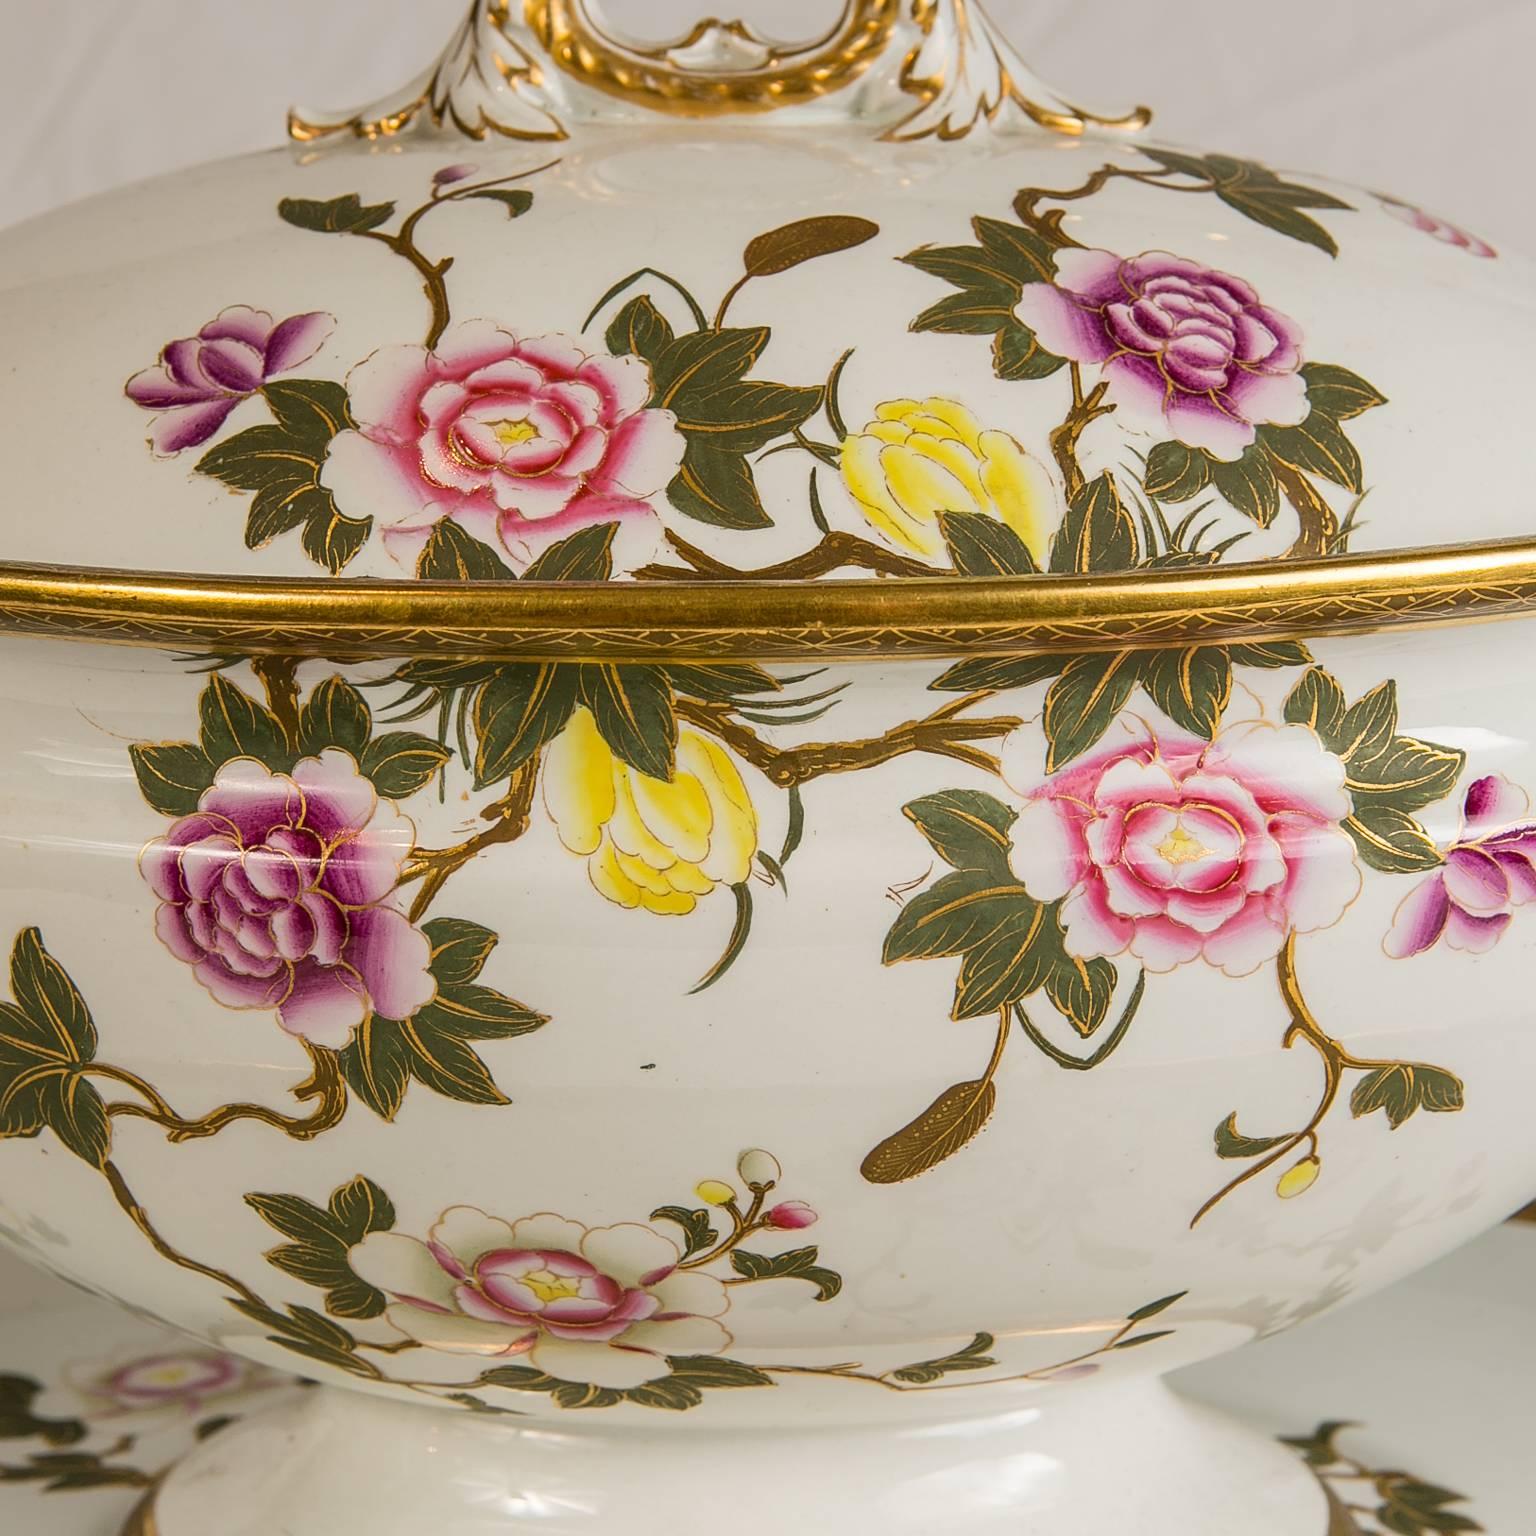 Cette grande soupière et son support Royal Worcester sont décorés de délicates roses roses, violettes, blanches et jaunes et de feuilles vert tendre rehaussées d'or. Le fleuron et les poignées sont réalisés en forme de Branch, ce qui ajoute au